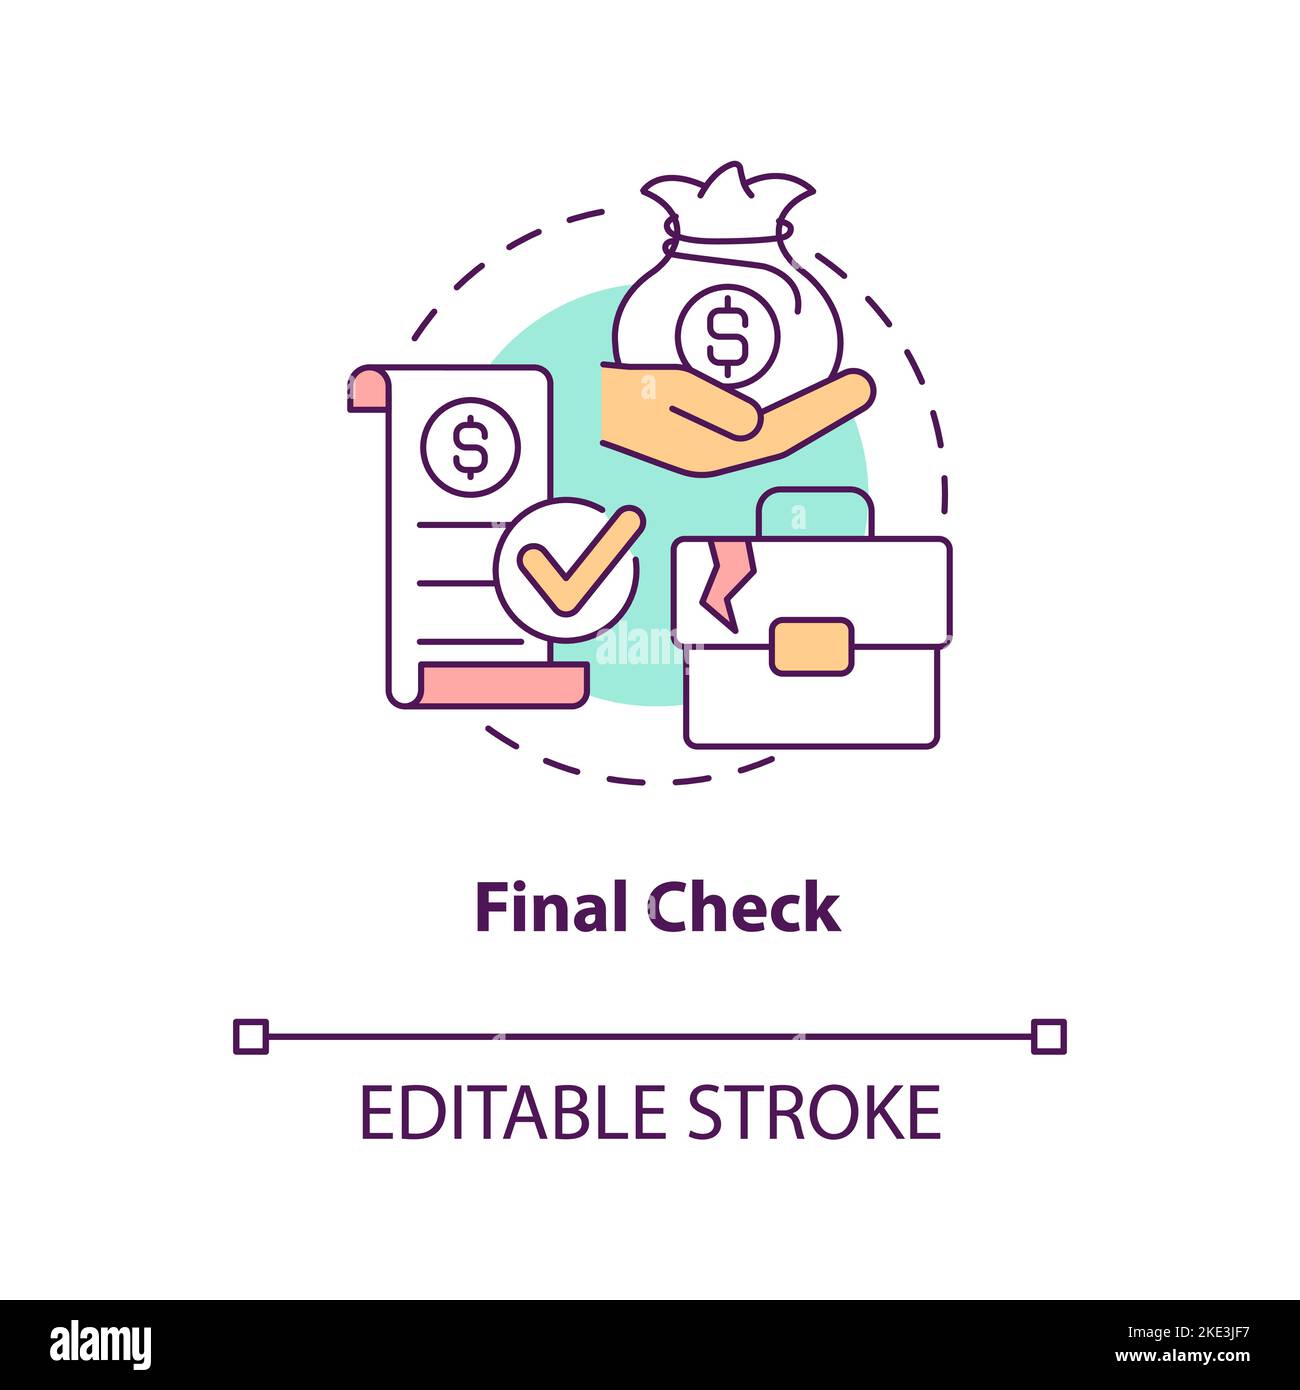 Final check concept icon Stock Vector